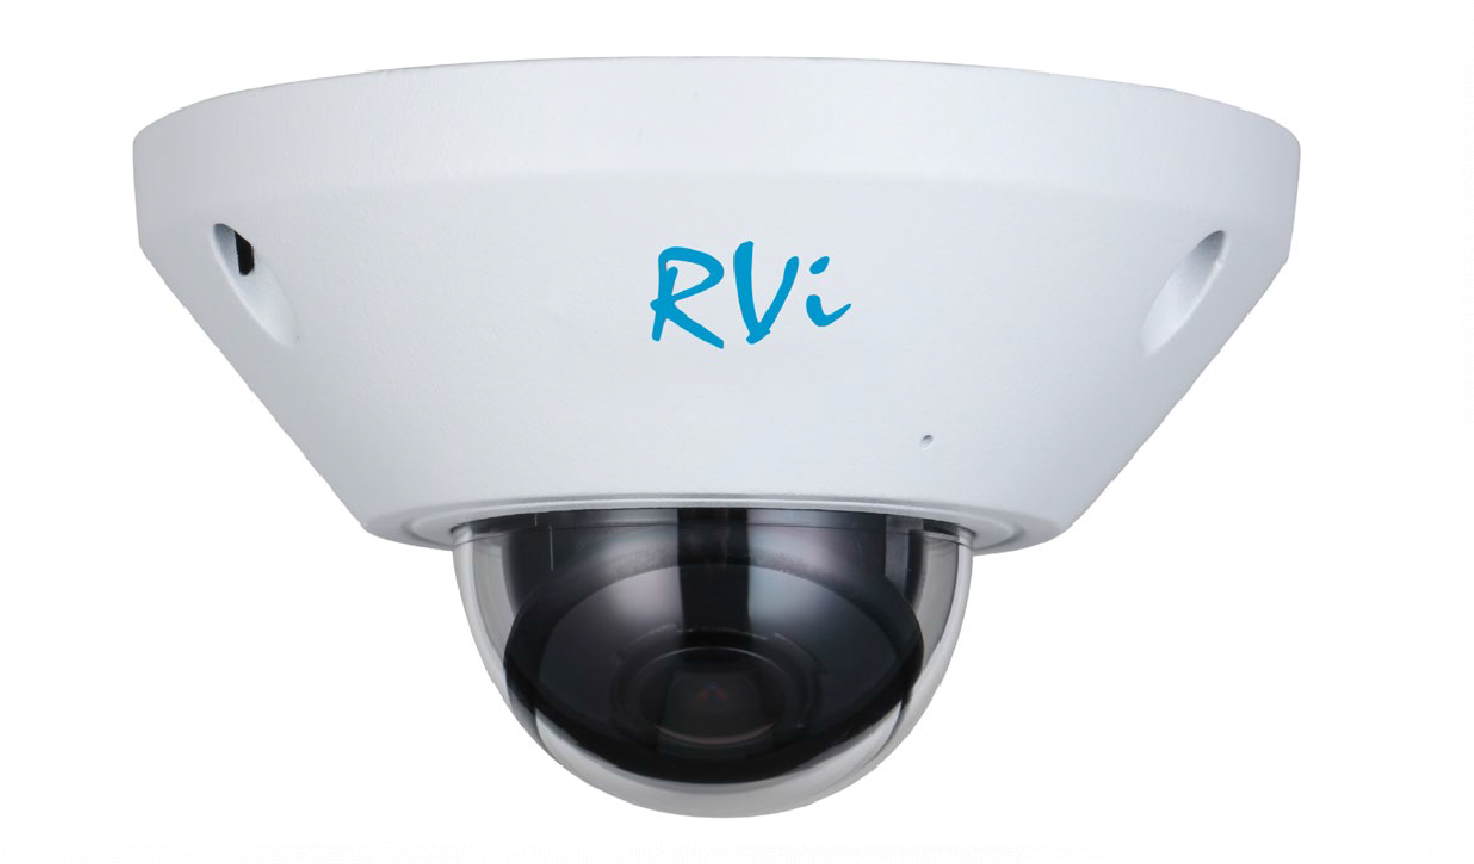 RVi-1NCFX5138 (1.4) white - купить в интернет магазине с доставкой, цены, описание, характеристики, отзывы